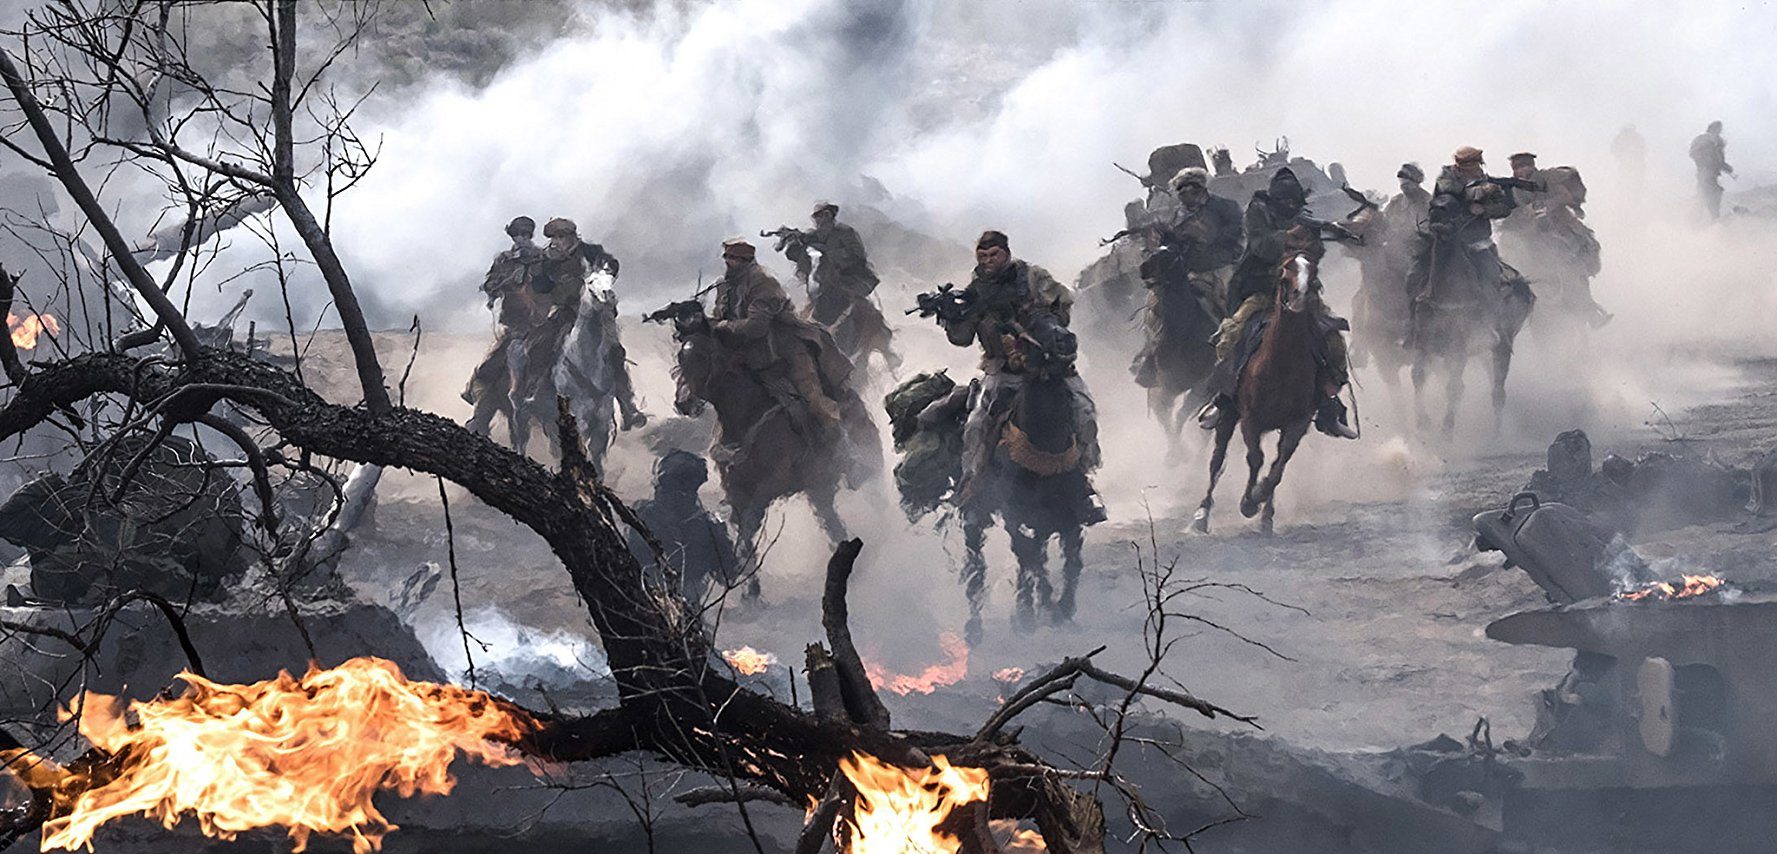 Pasukan berkuda menyerang markas Taliban. Foto dari Warner Bros Pictures 